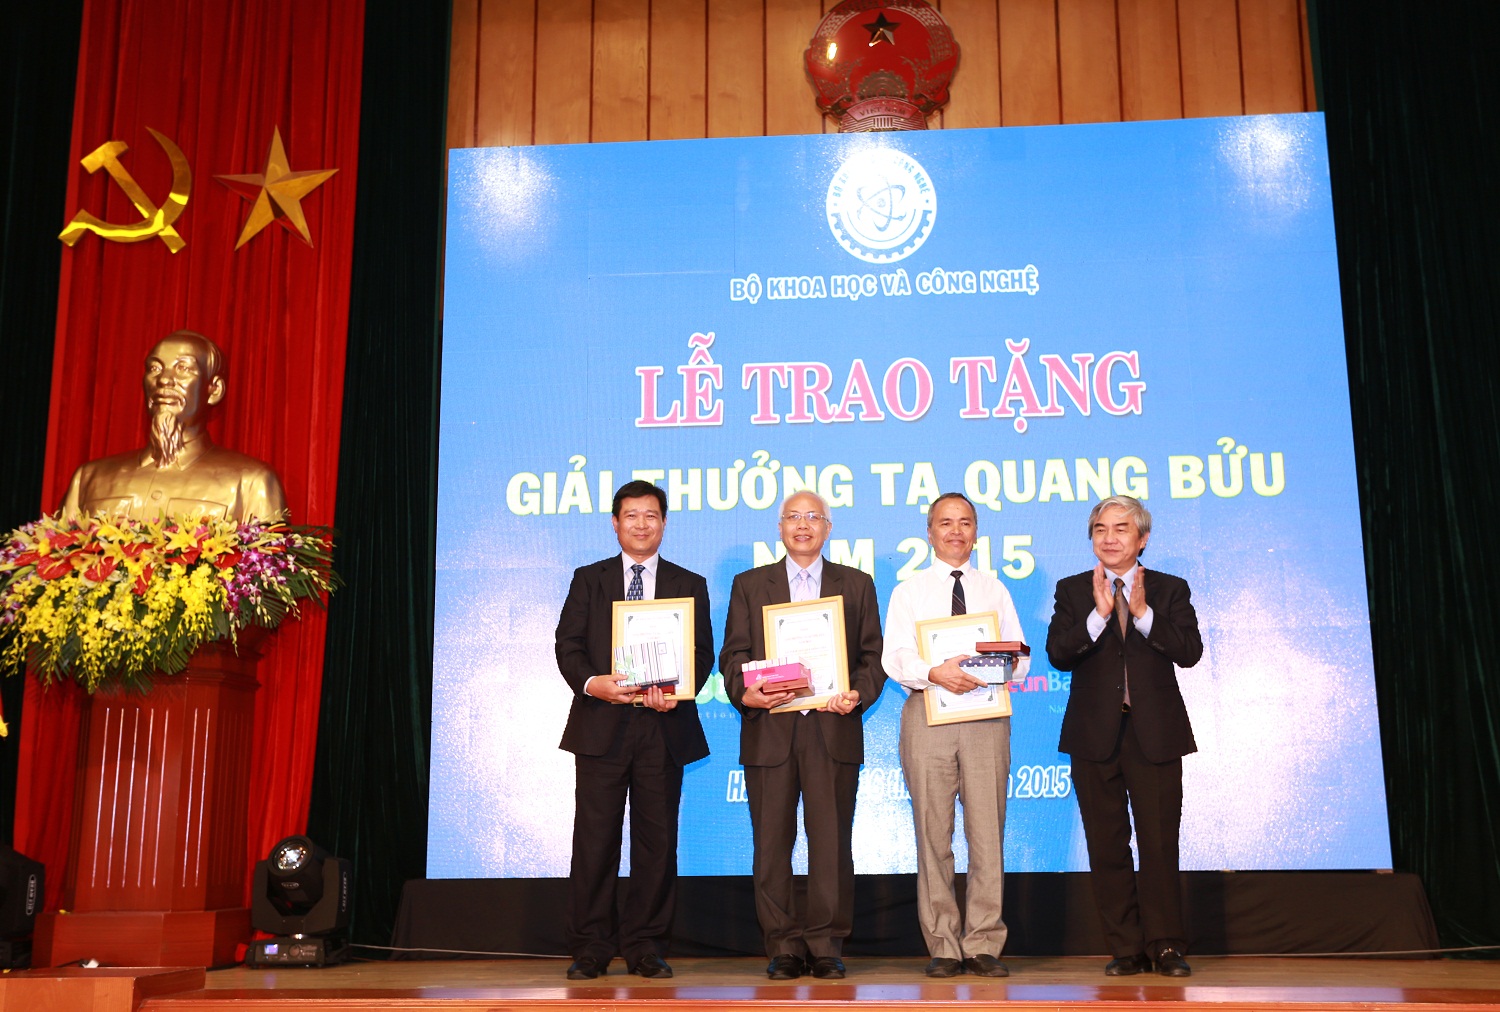 Bộ trưởng Bộ KH&CN Nguyễn Quân trao giải thưởng cho 3 nhà khoa học có công trình khoa học xuất sắc